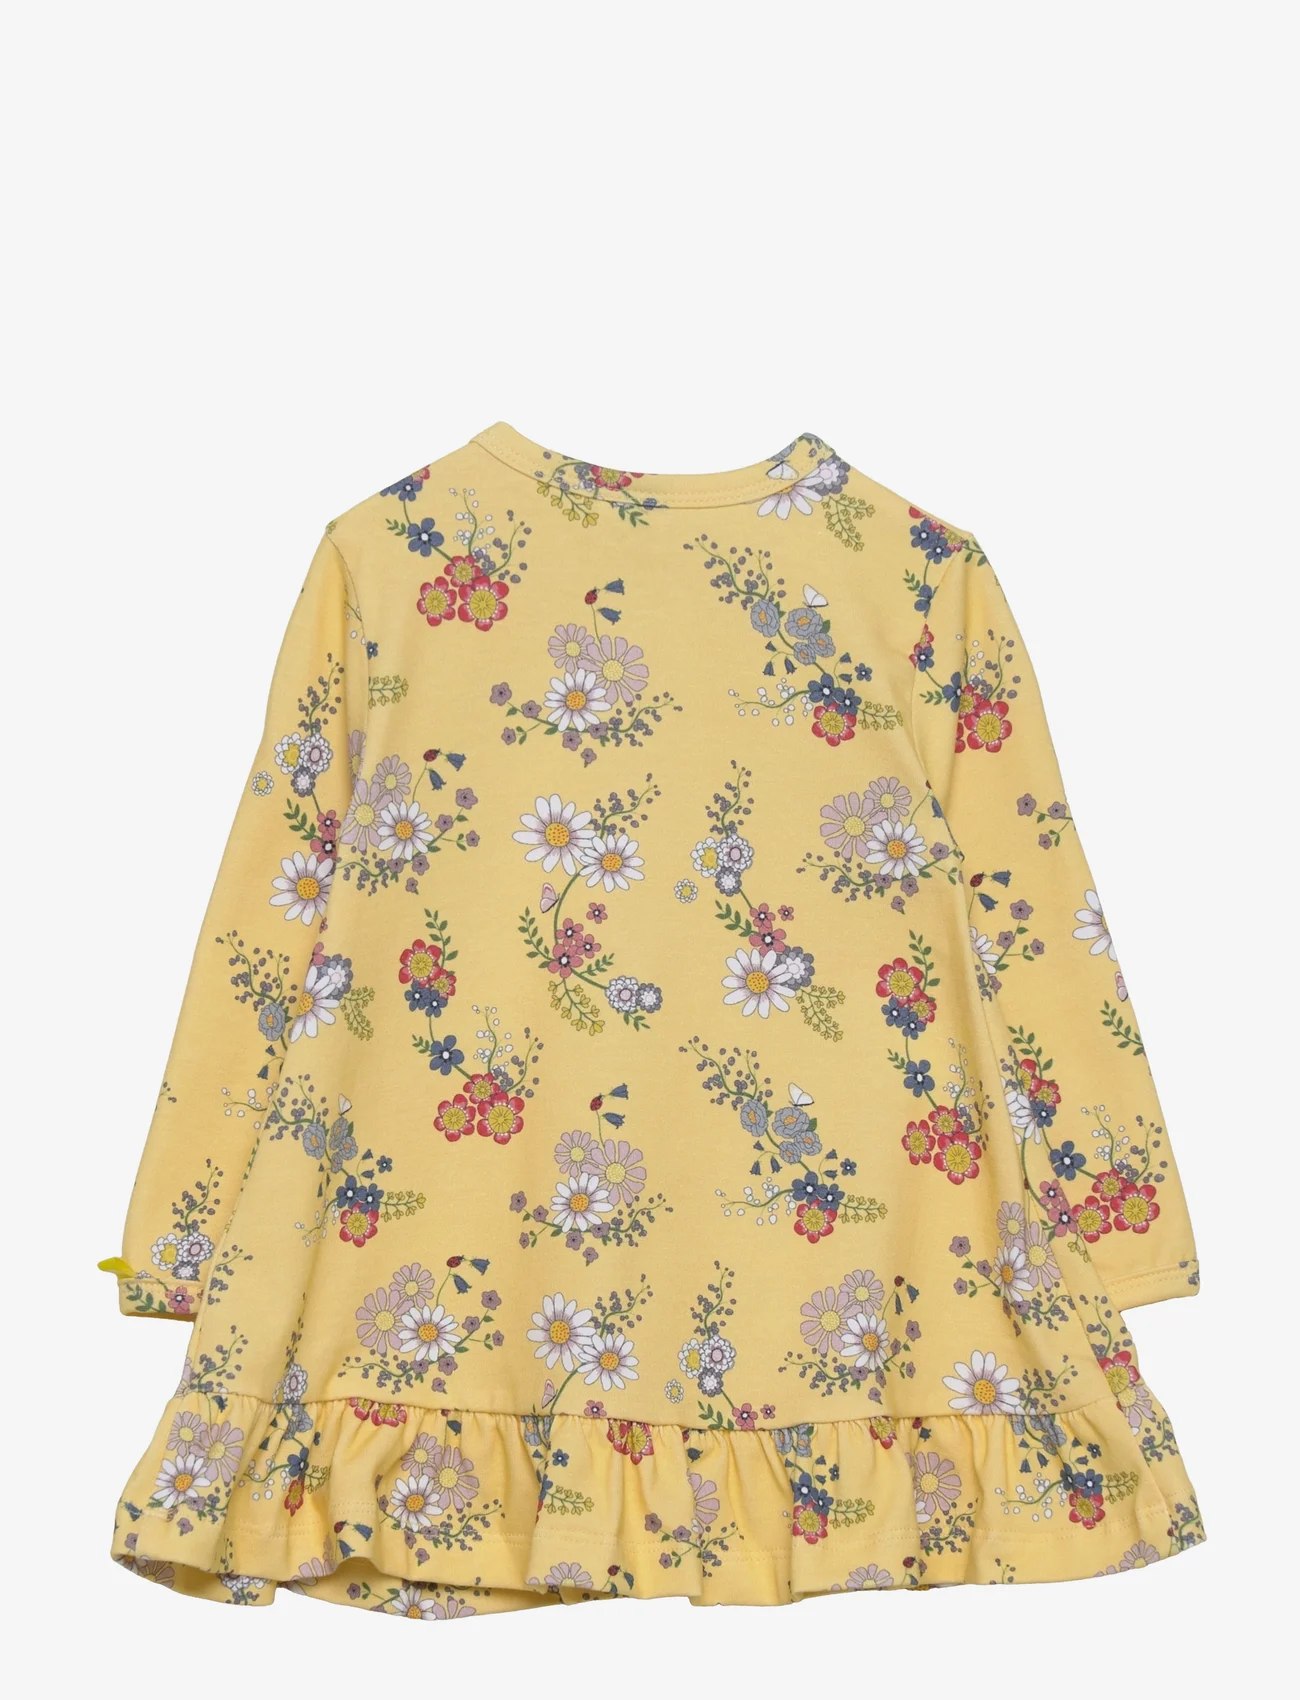 Smallstuff - Dress LS w. frills, flower garden, soft yellow - long-sleeved baby dresses - yellow - 1